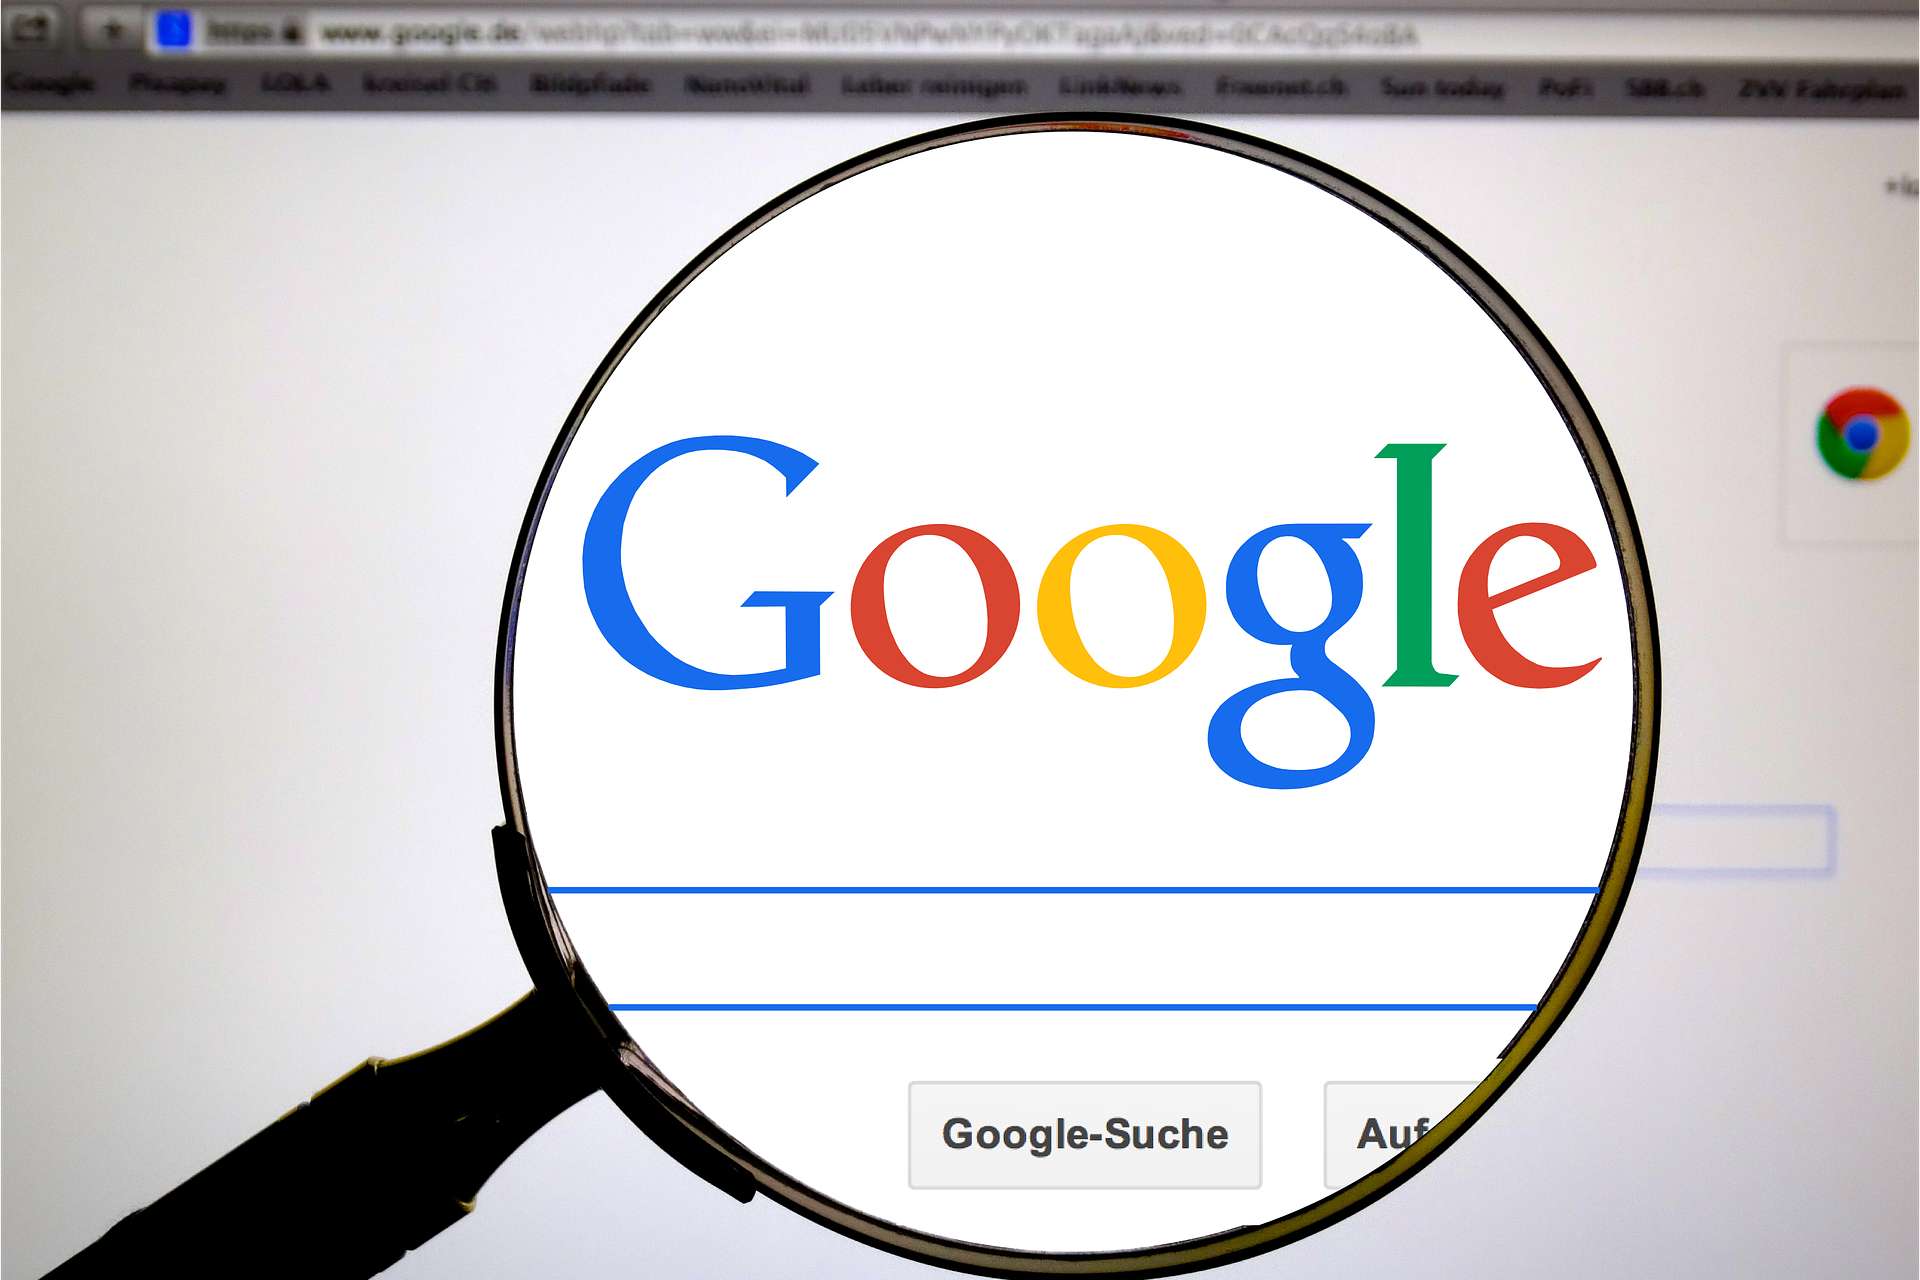 Гугл је најмоћнији претраживач на Интернету